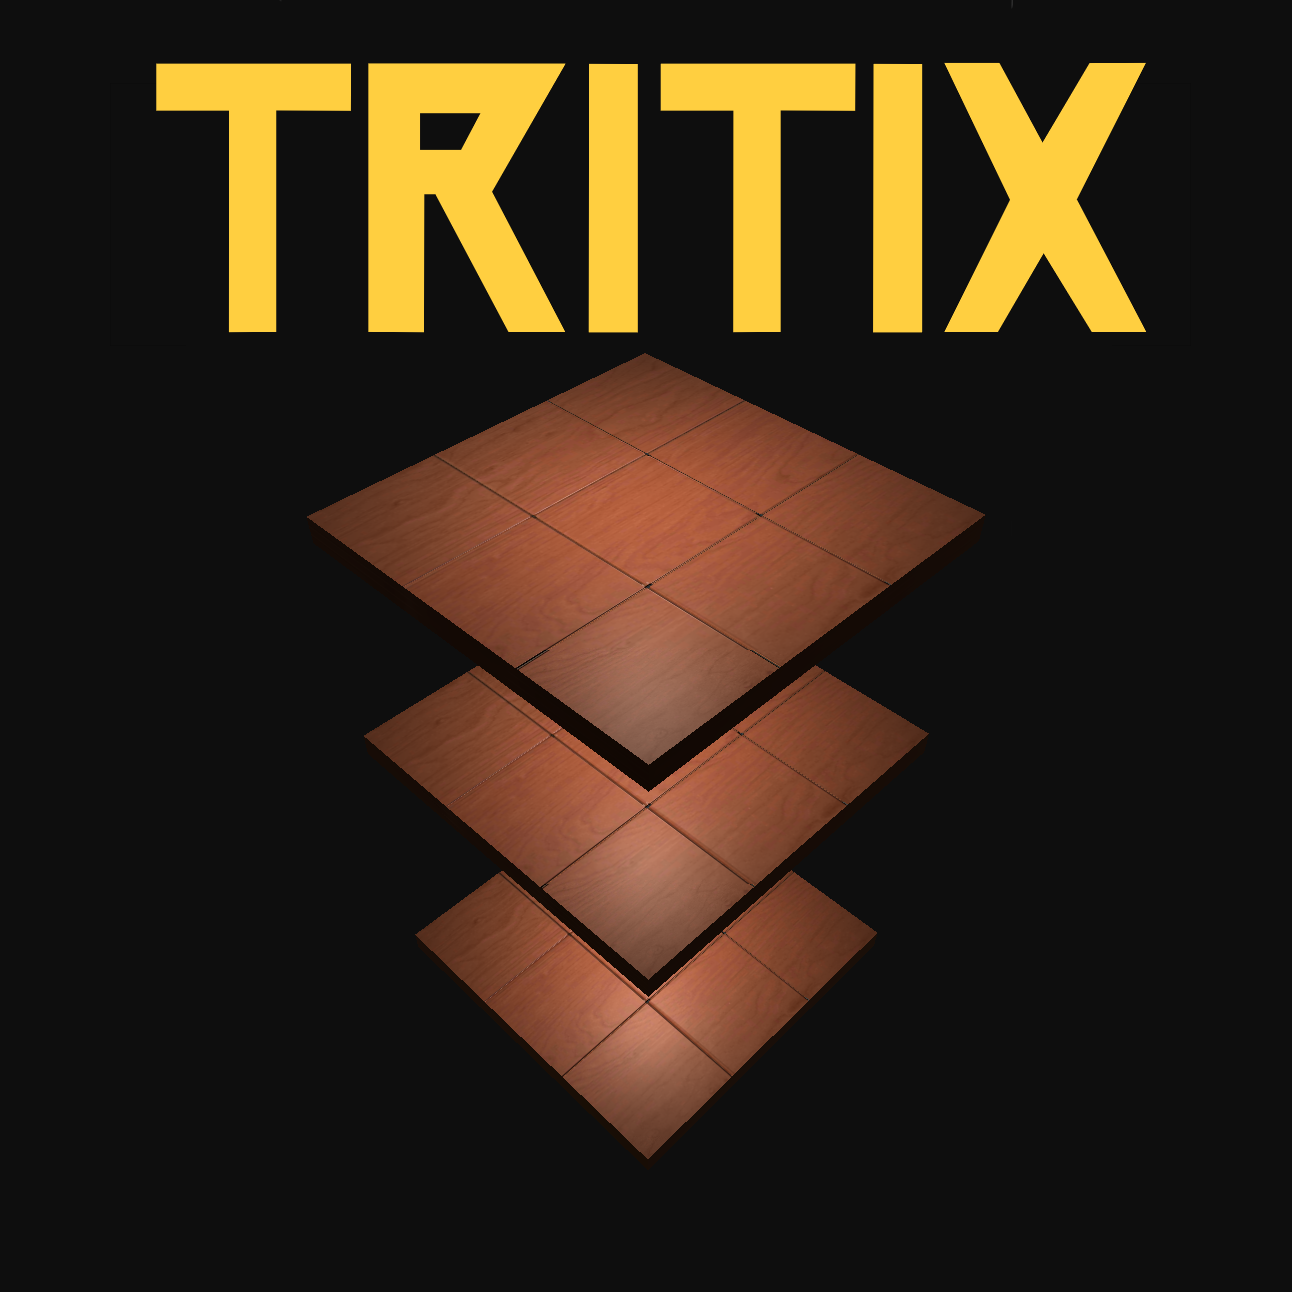 TRITIX Title Image